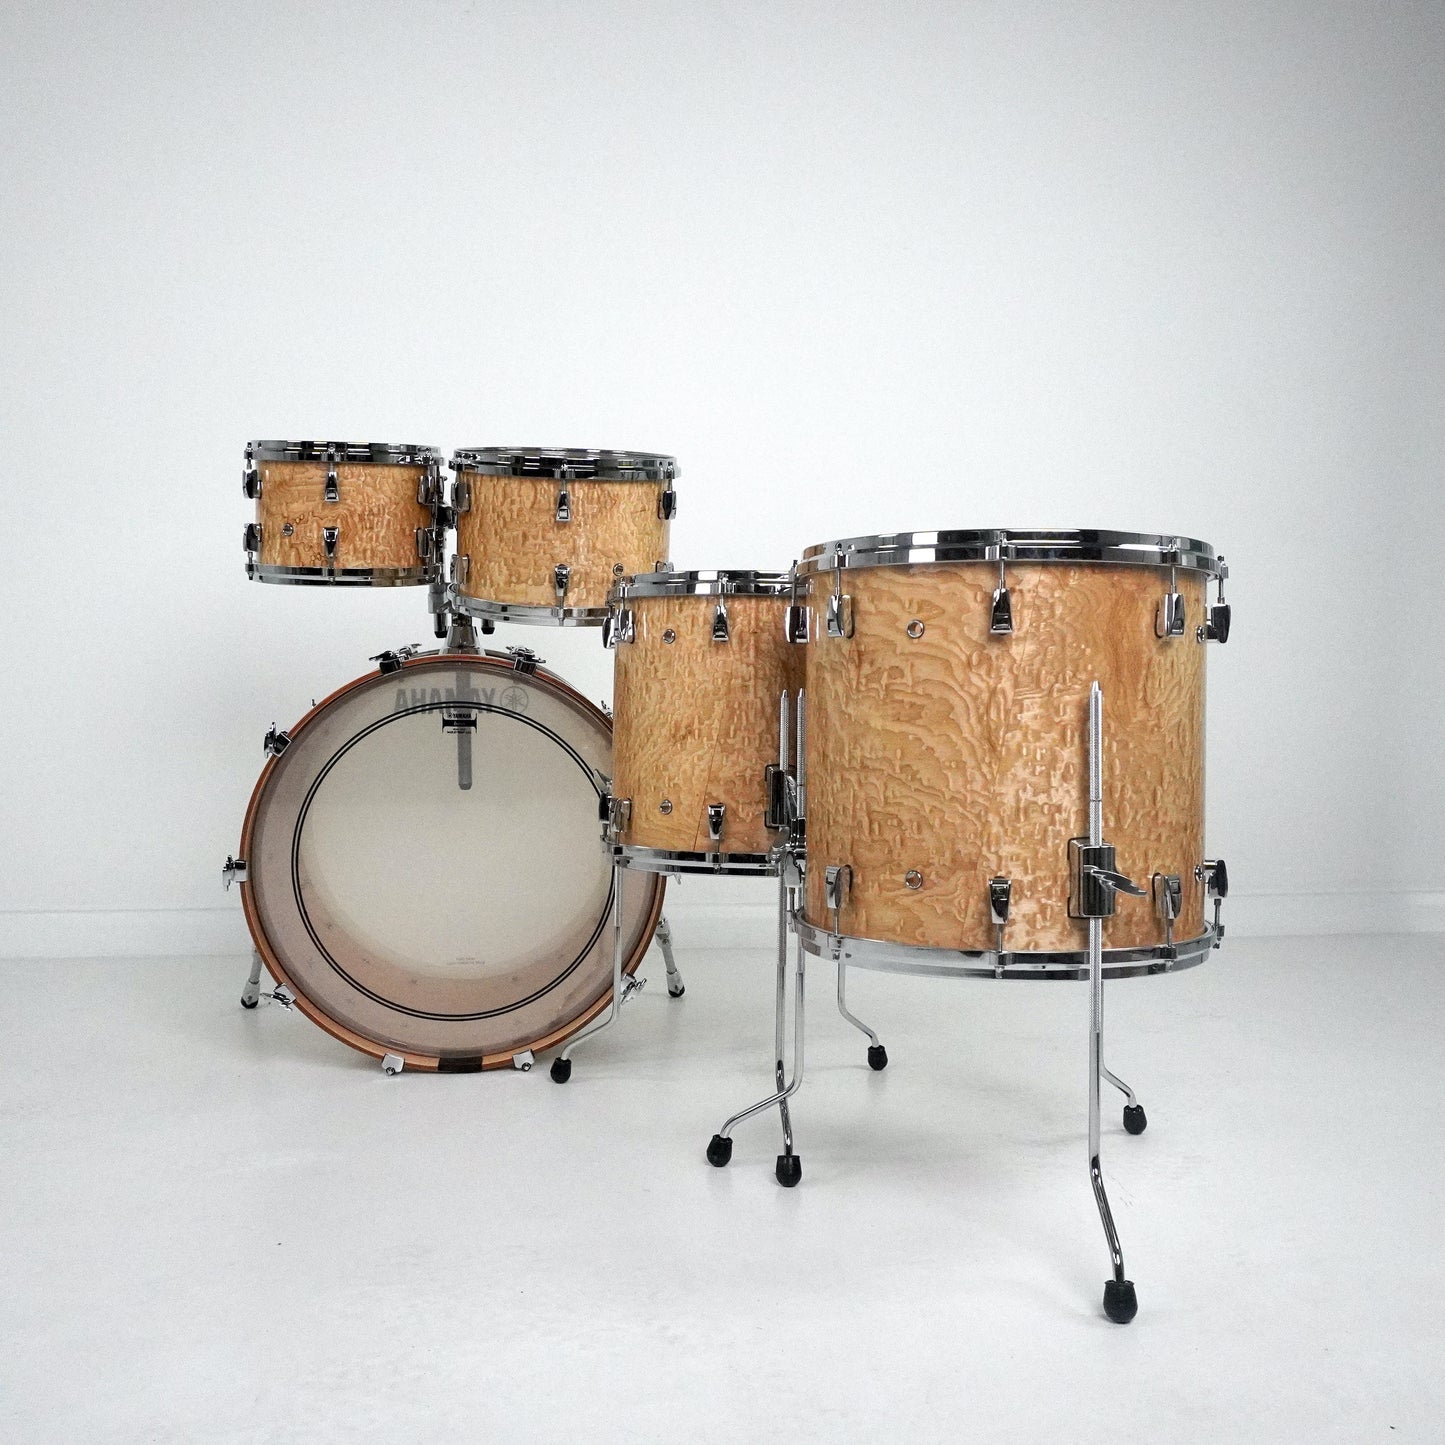 Yamaha 5-Piece PHX Ash Drum Kit 22,10,12,14,16